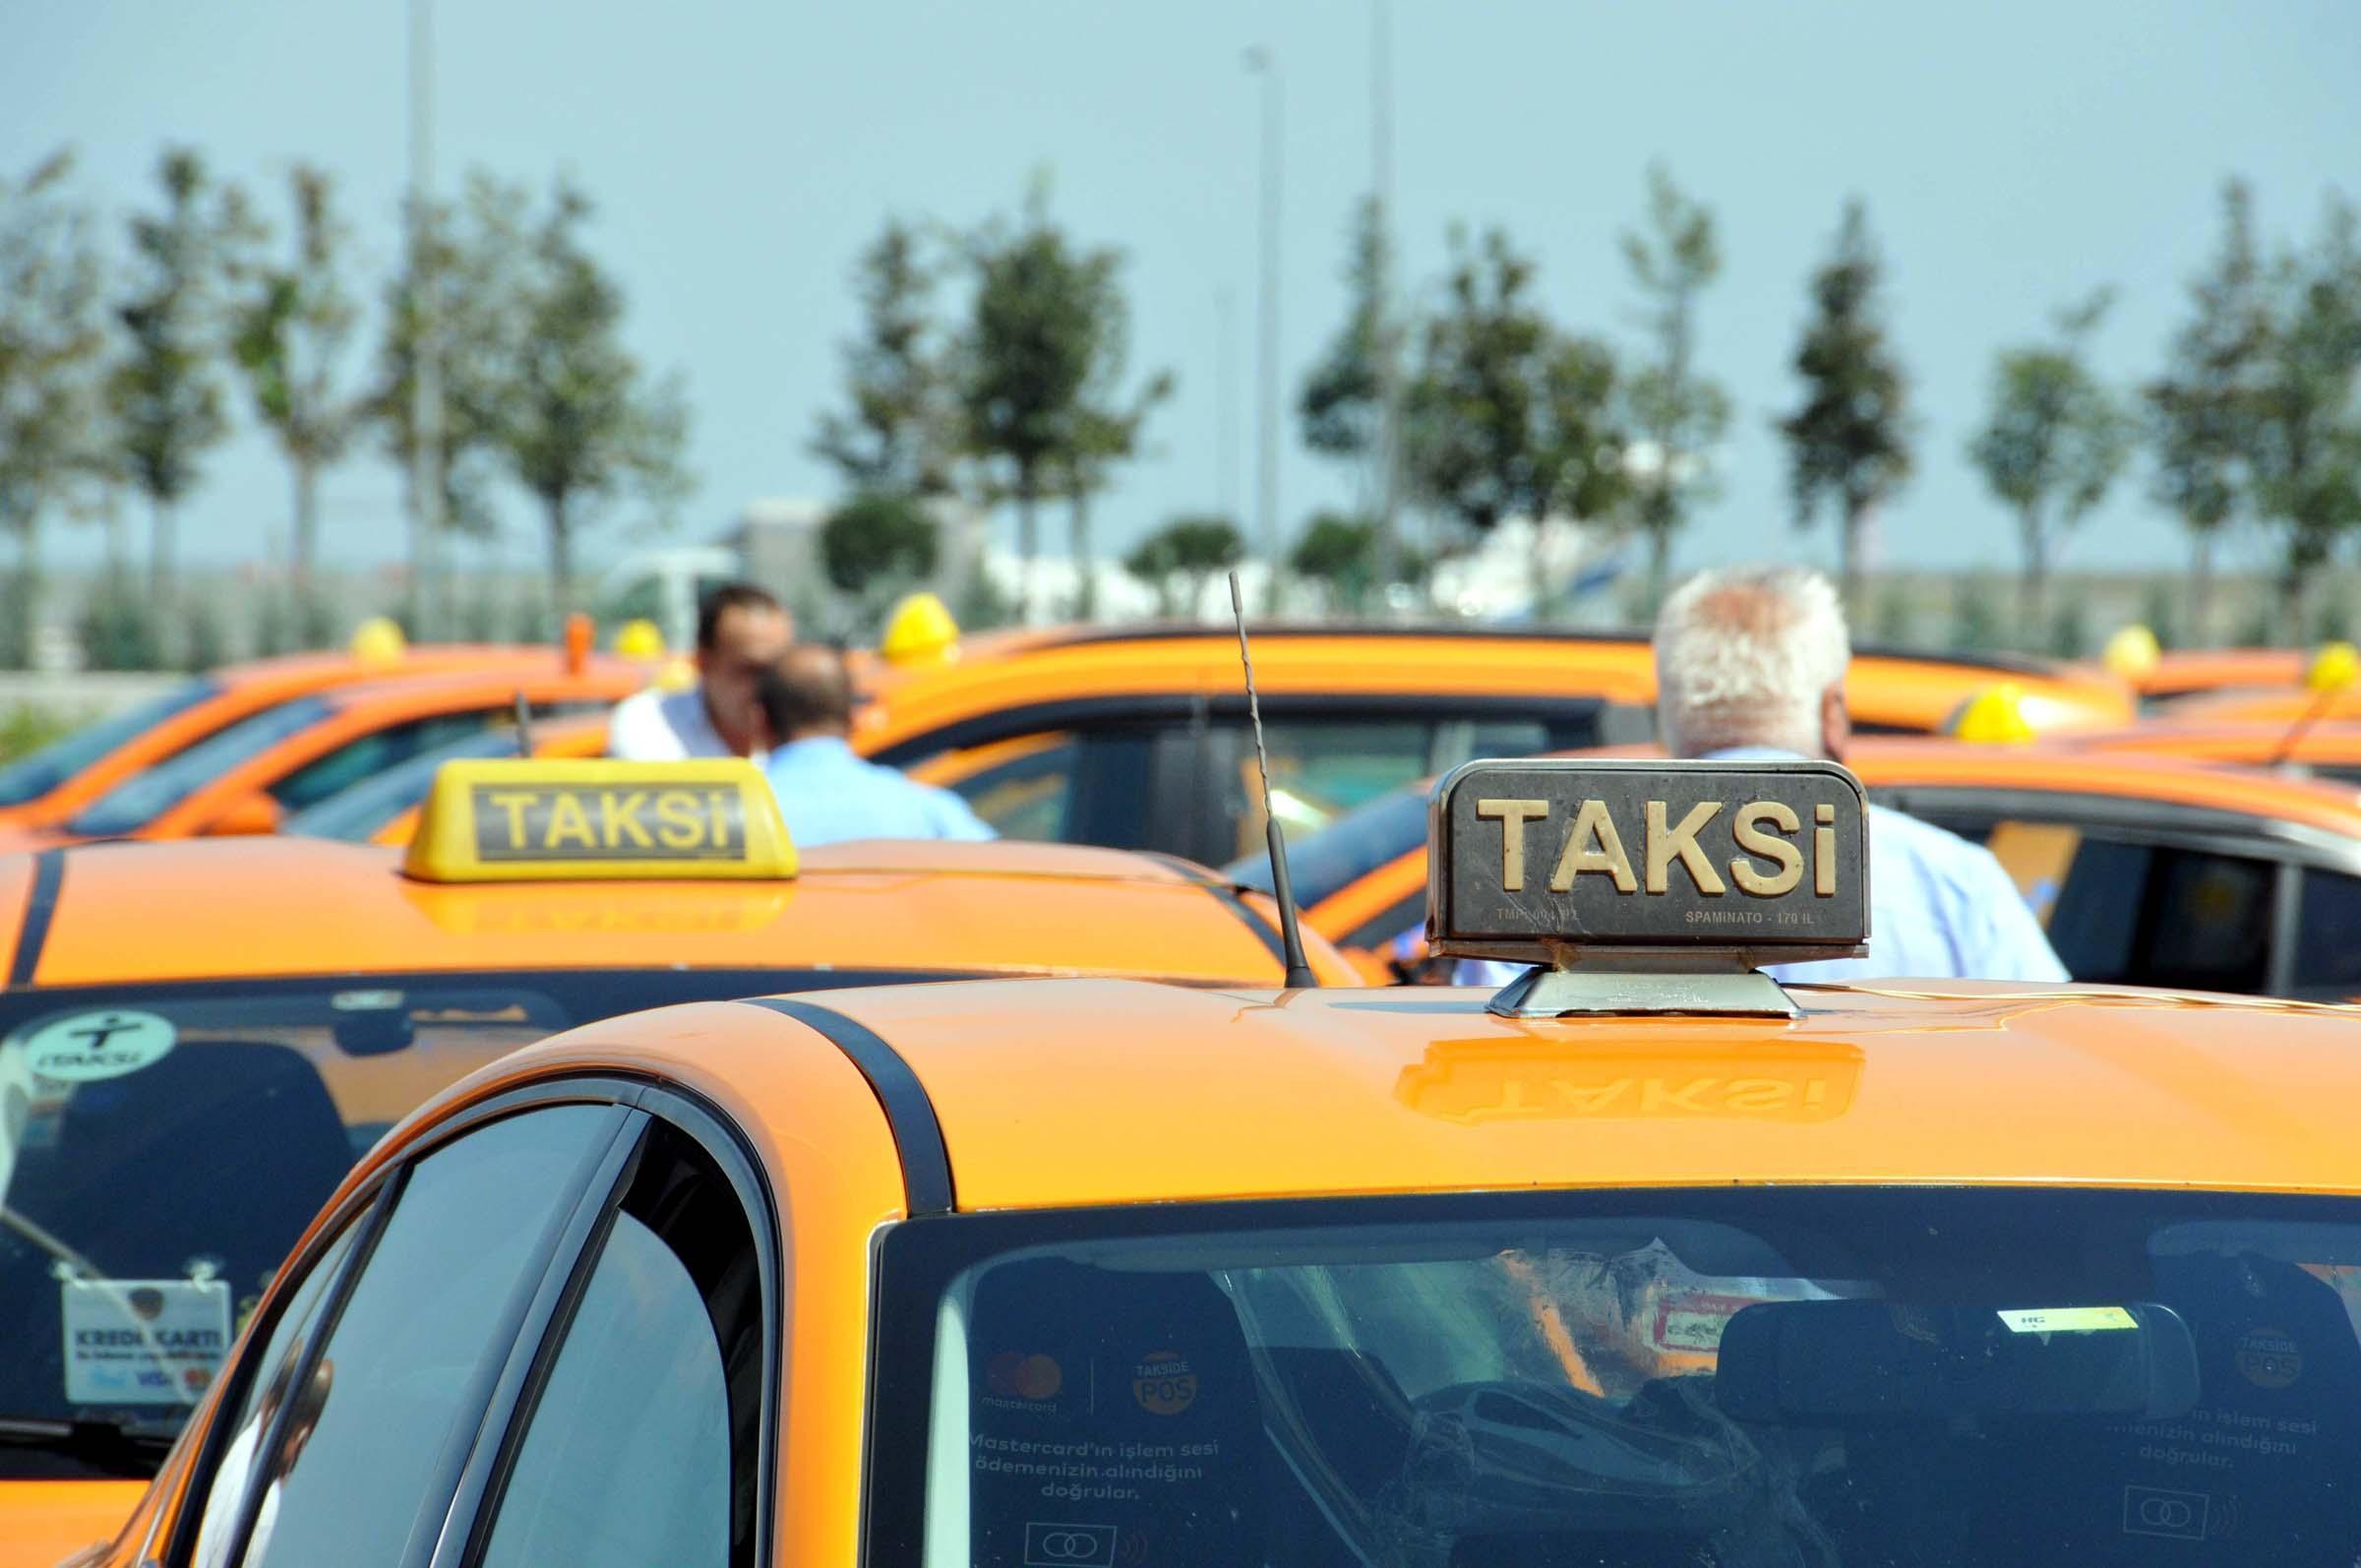 İBB ile havalimanı taksicileri anlaştı, 400 taksinin ruhsatı aktif hale getirildi